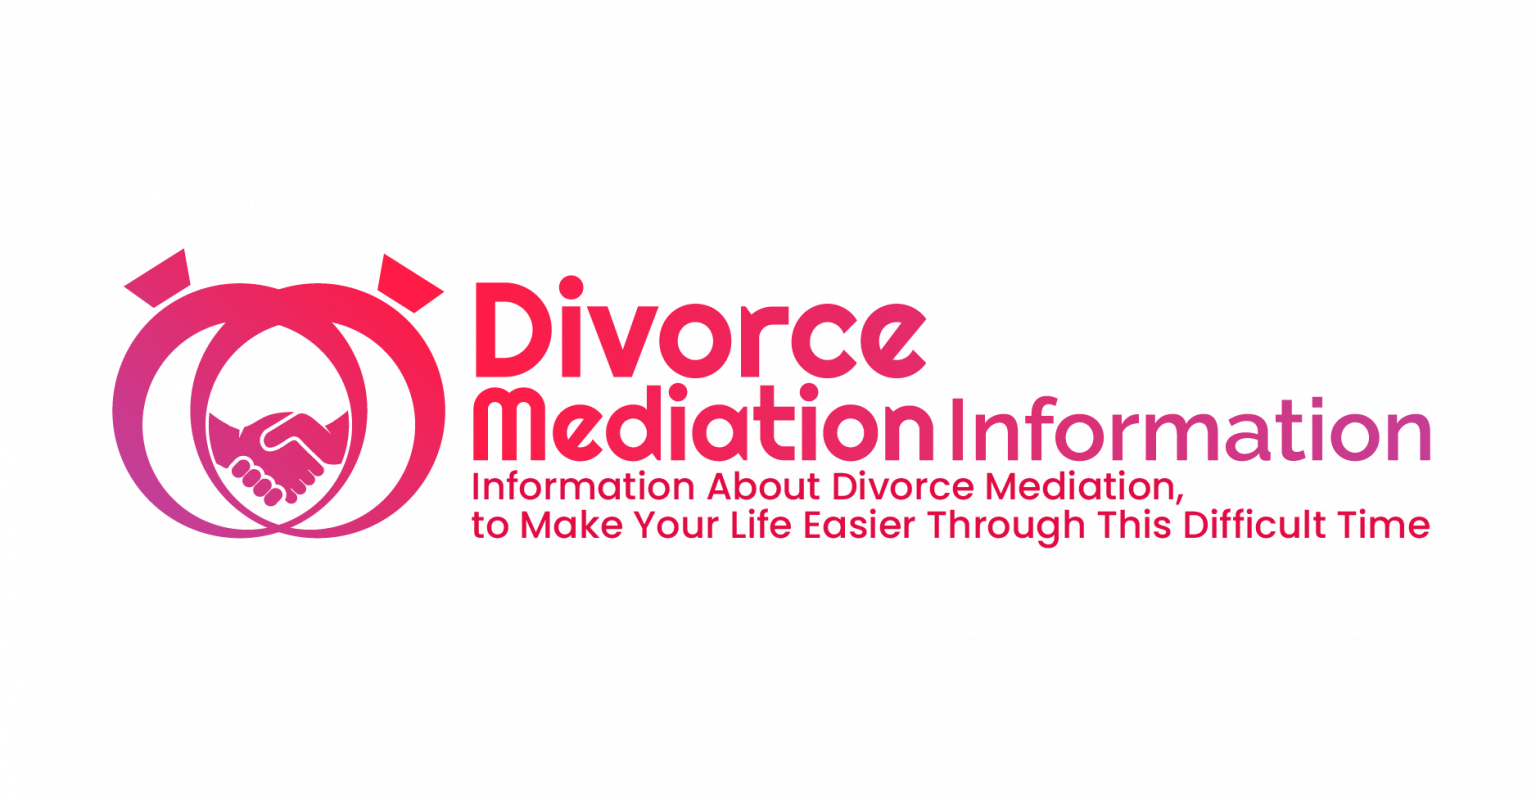 Divorce Mediation How to Find an Affordable Divorce